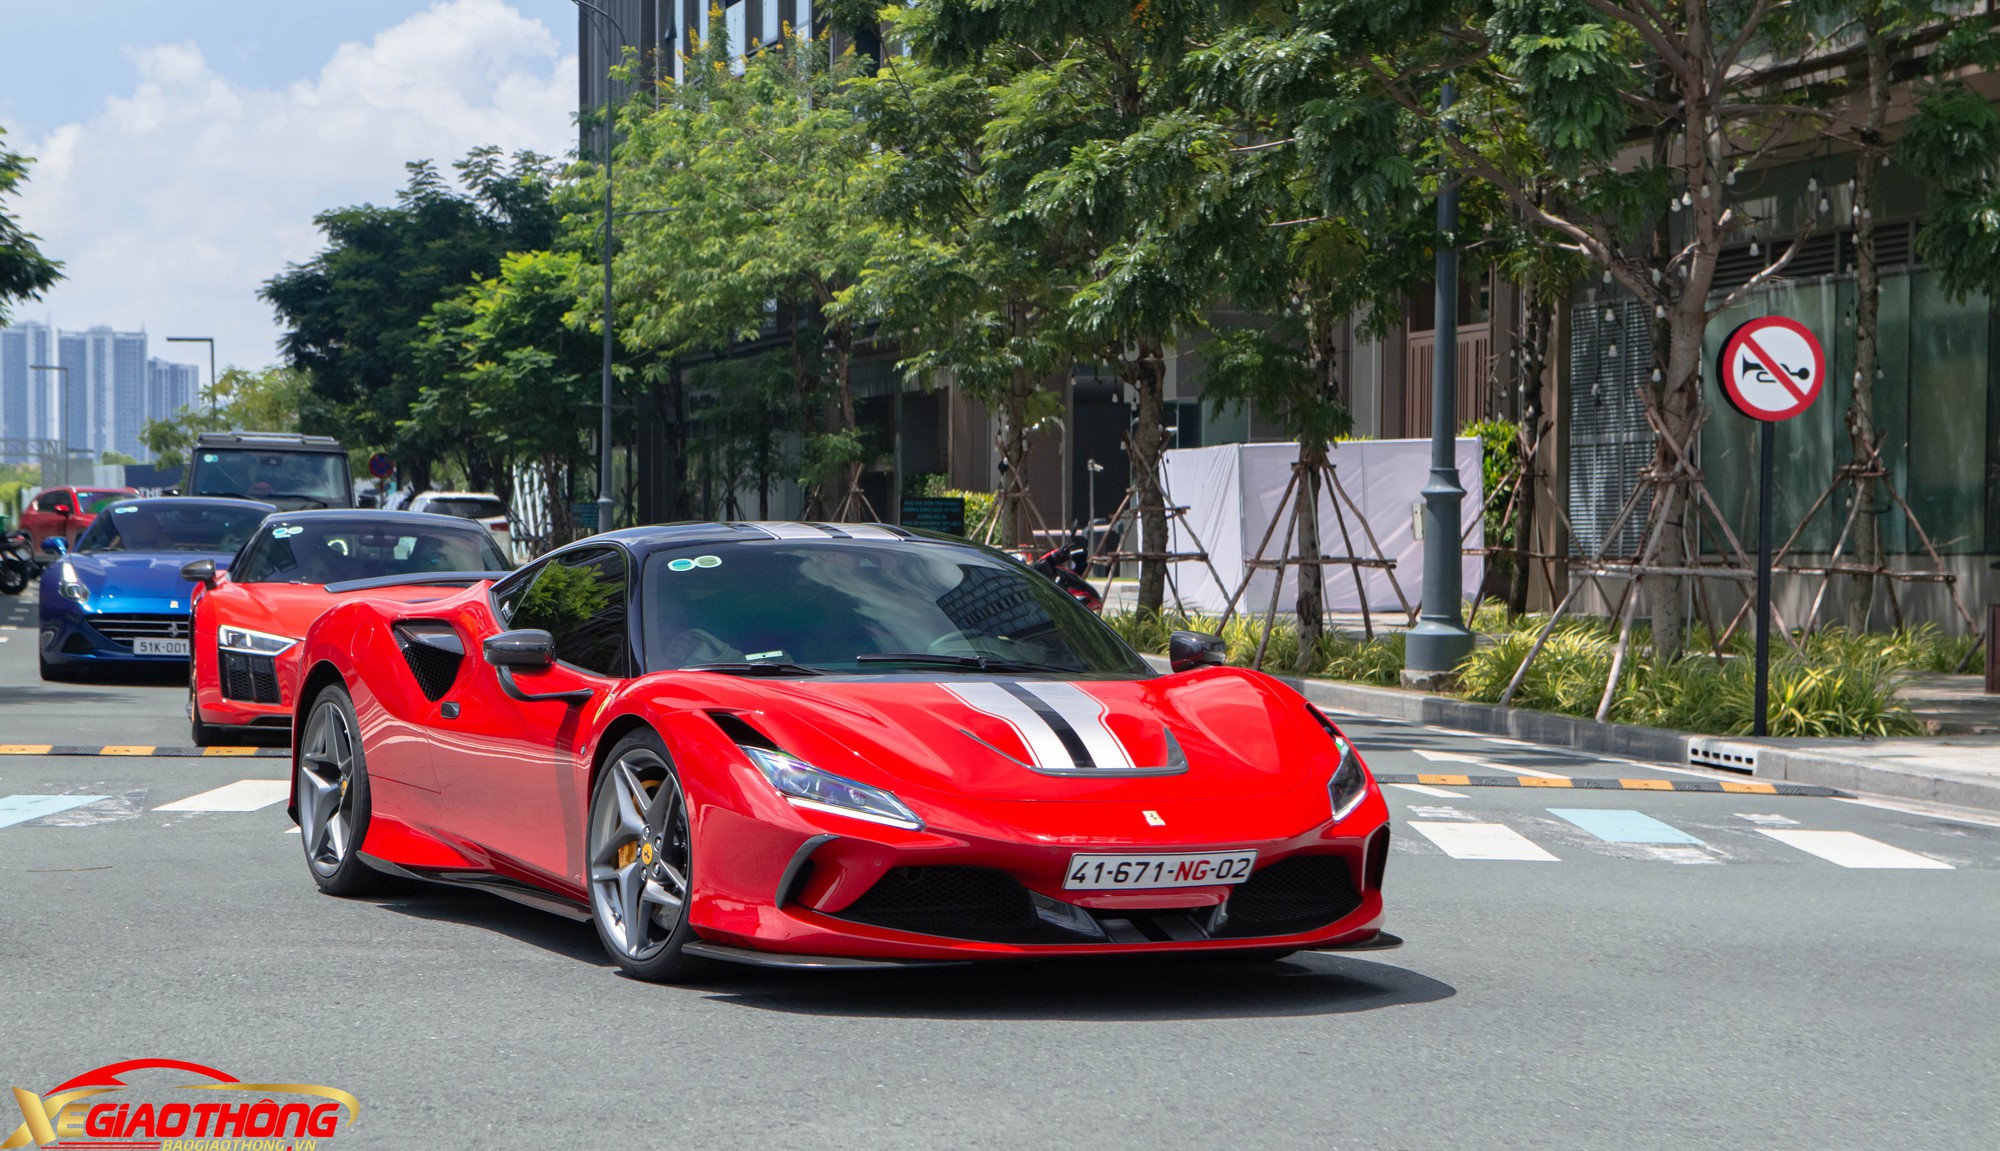 Cận cảnh siêu xe Ferrari F8 Tributo độ tiền tỷ tại Việt Nam - Ảnh 6.